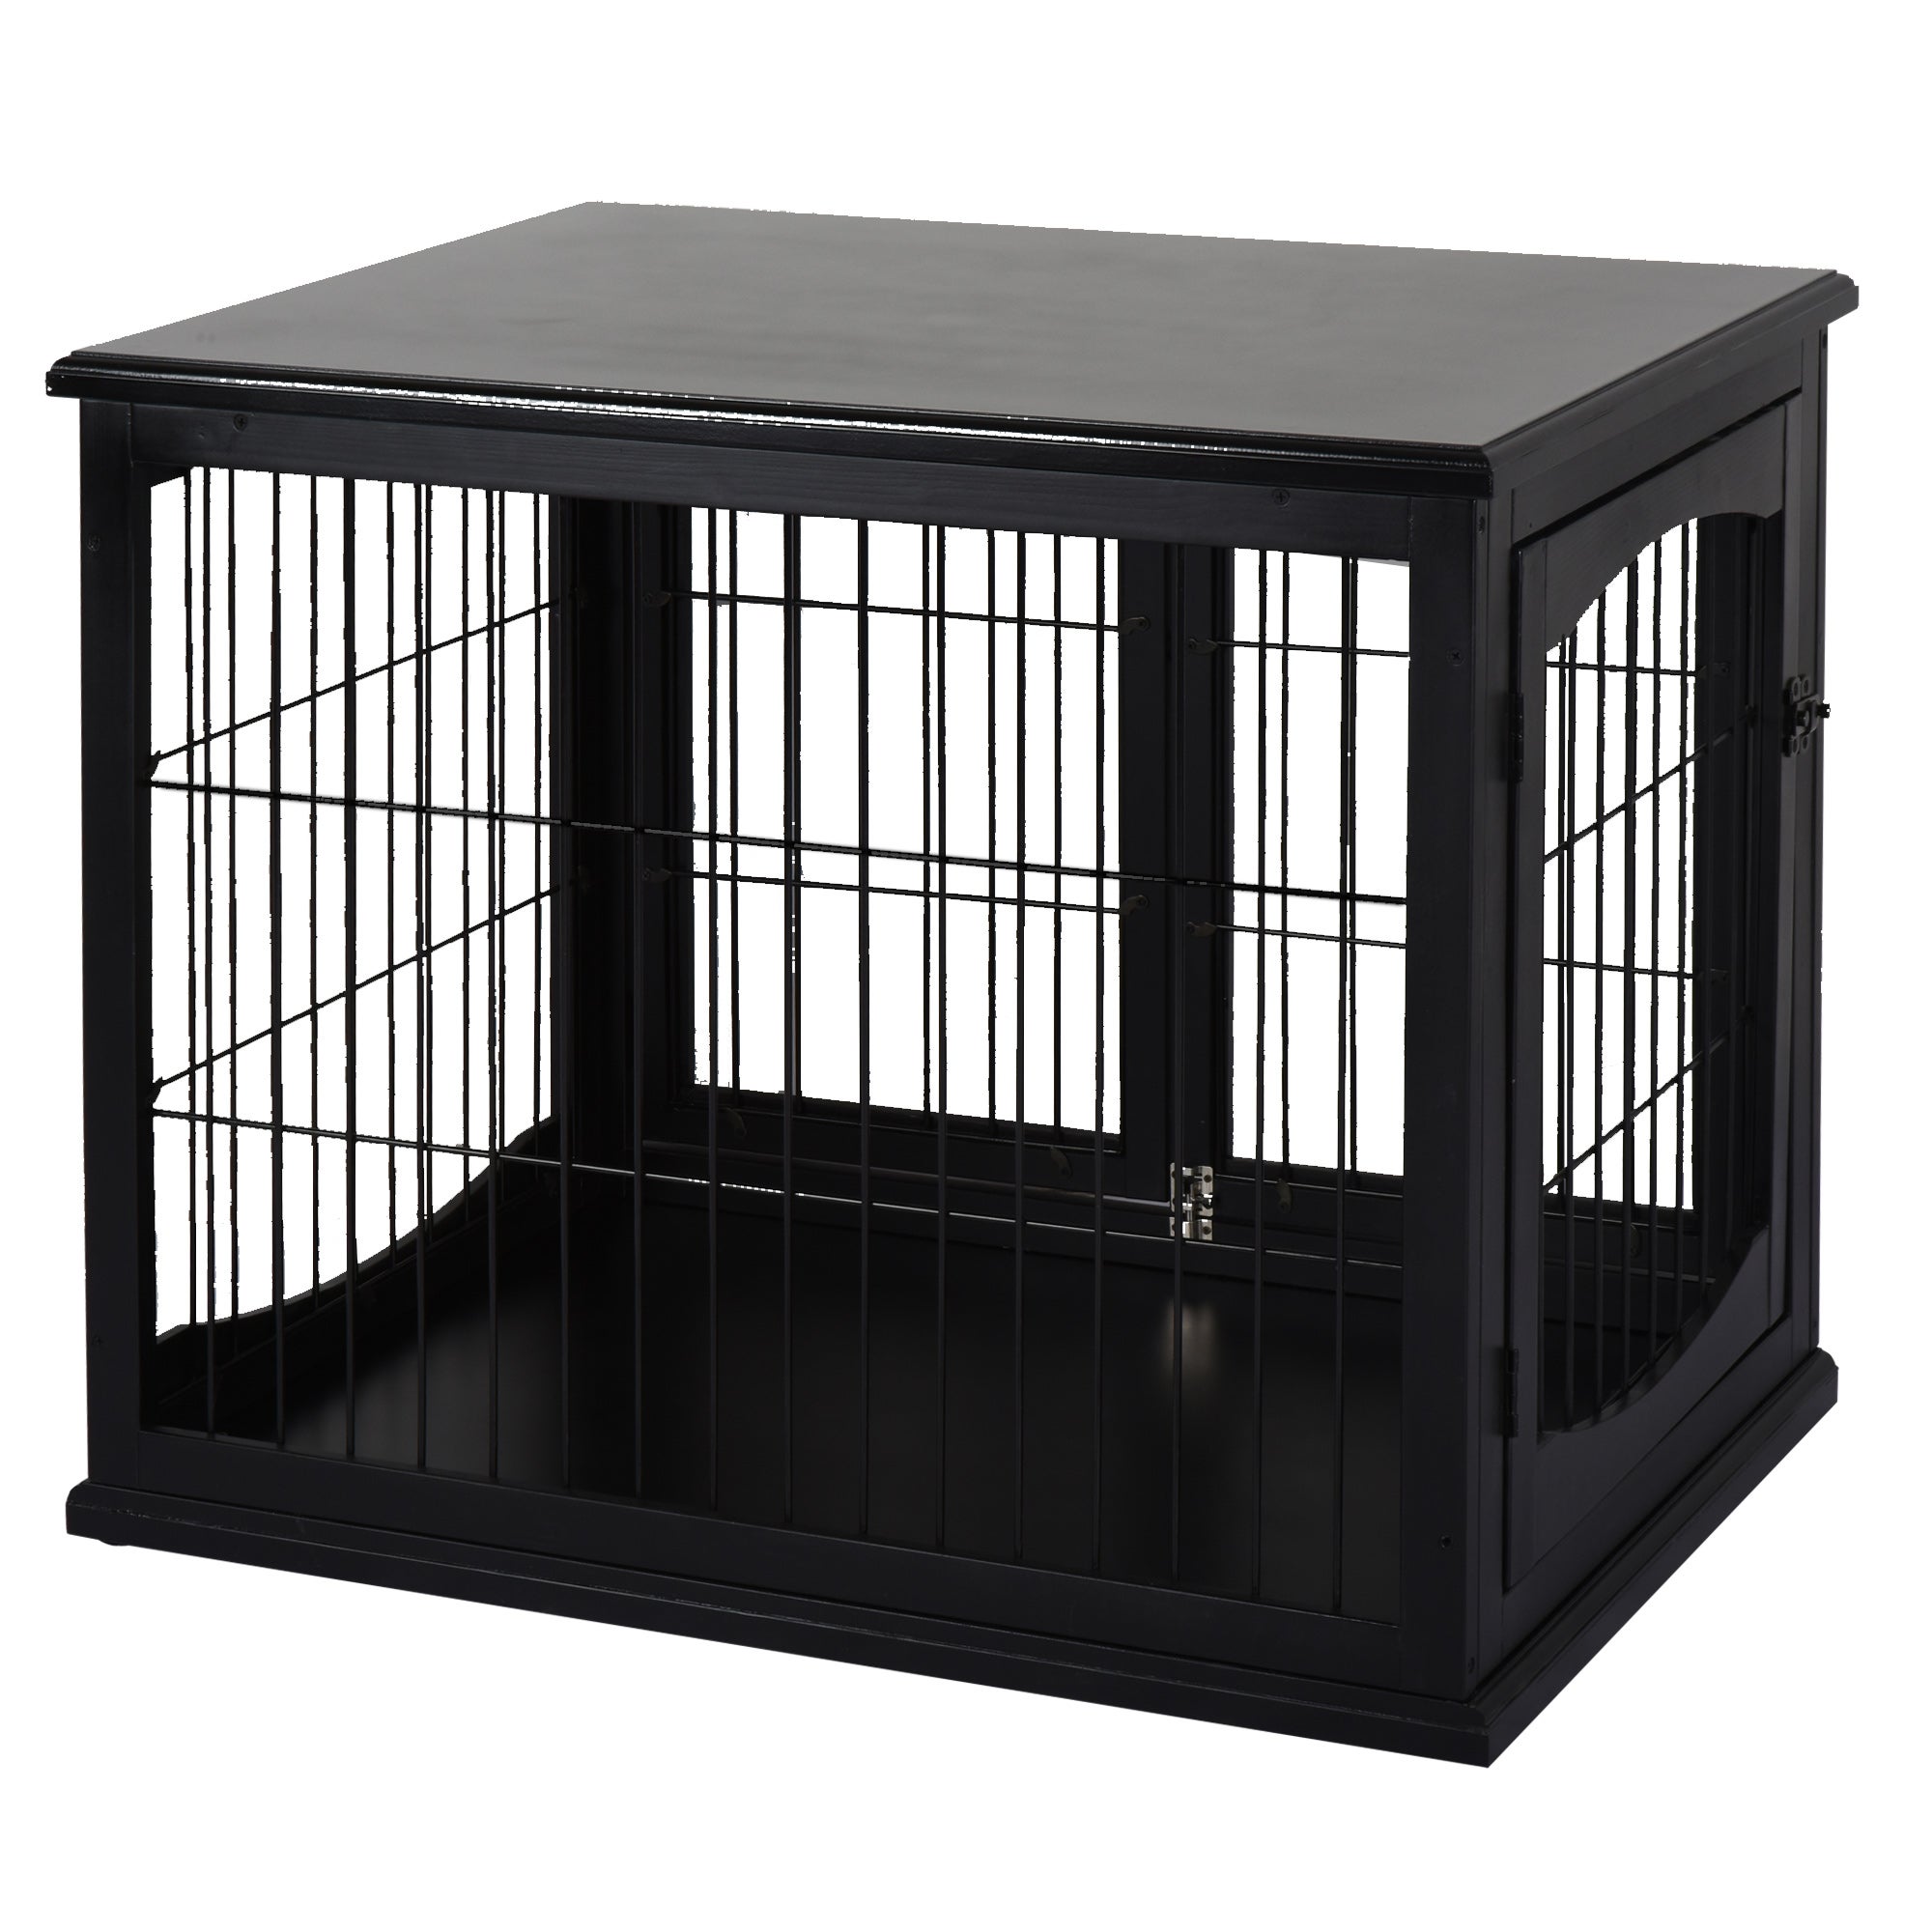 Cage maison pour chien, intérieur Superior